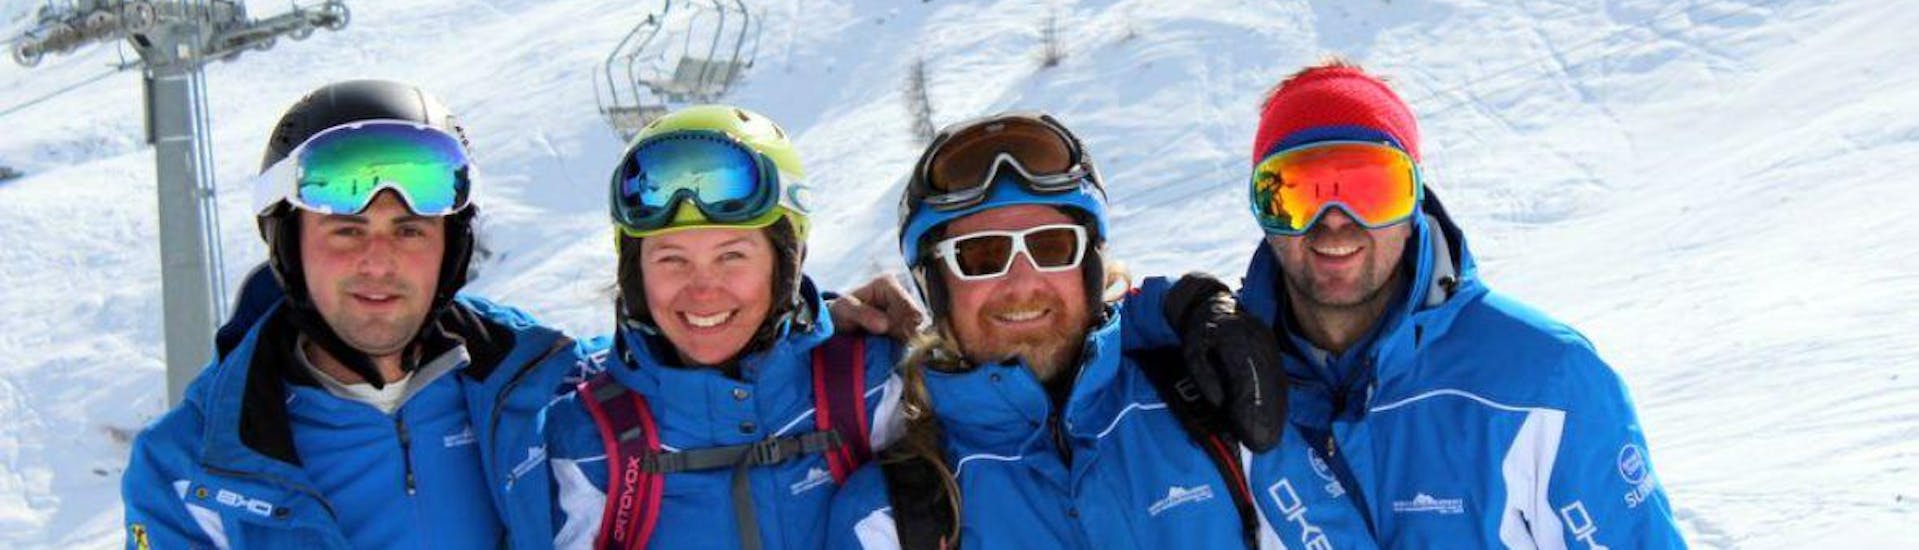 Vier Skilehrer der White Element Skischule Sillian lächeln gemeinsam in die Kamera und freuen sich darauf, ihren Skikurs in Sillian-Hochpustertal durchzuführen.